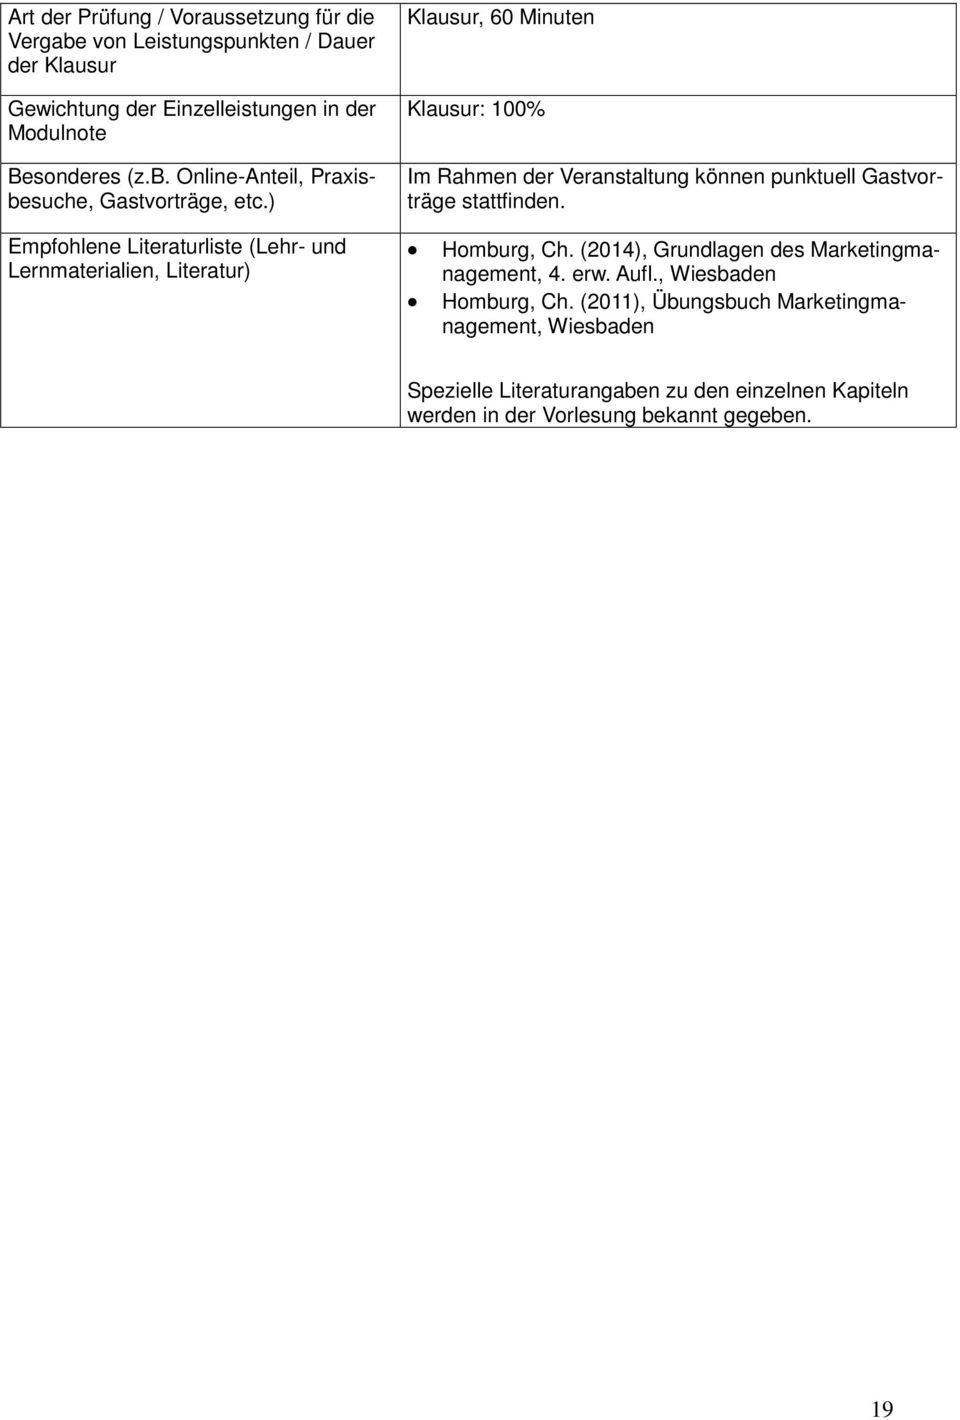 Gastvorträge stattfinden. Homburg, Ch. (2014), Grundlagen des Marketingmanagement, 4. erw. Aufl., Wiesbaden Homburg, Ch.